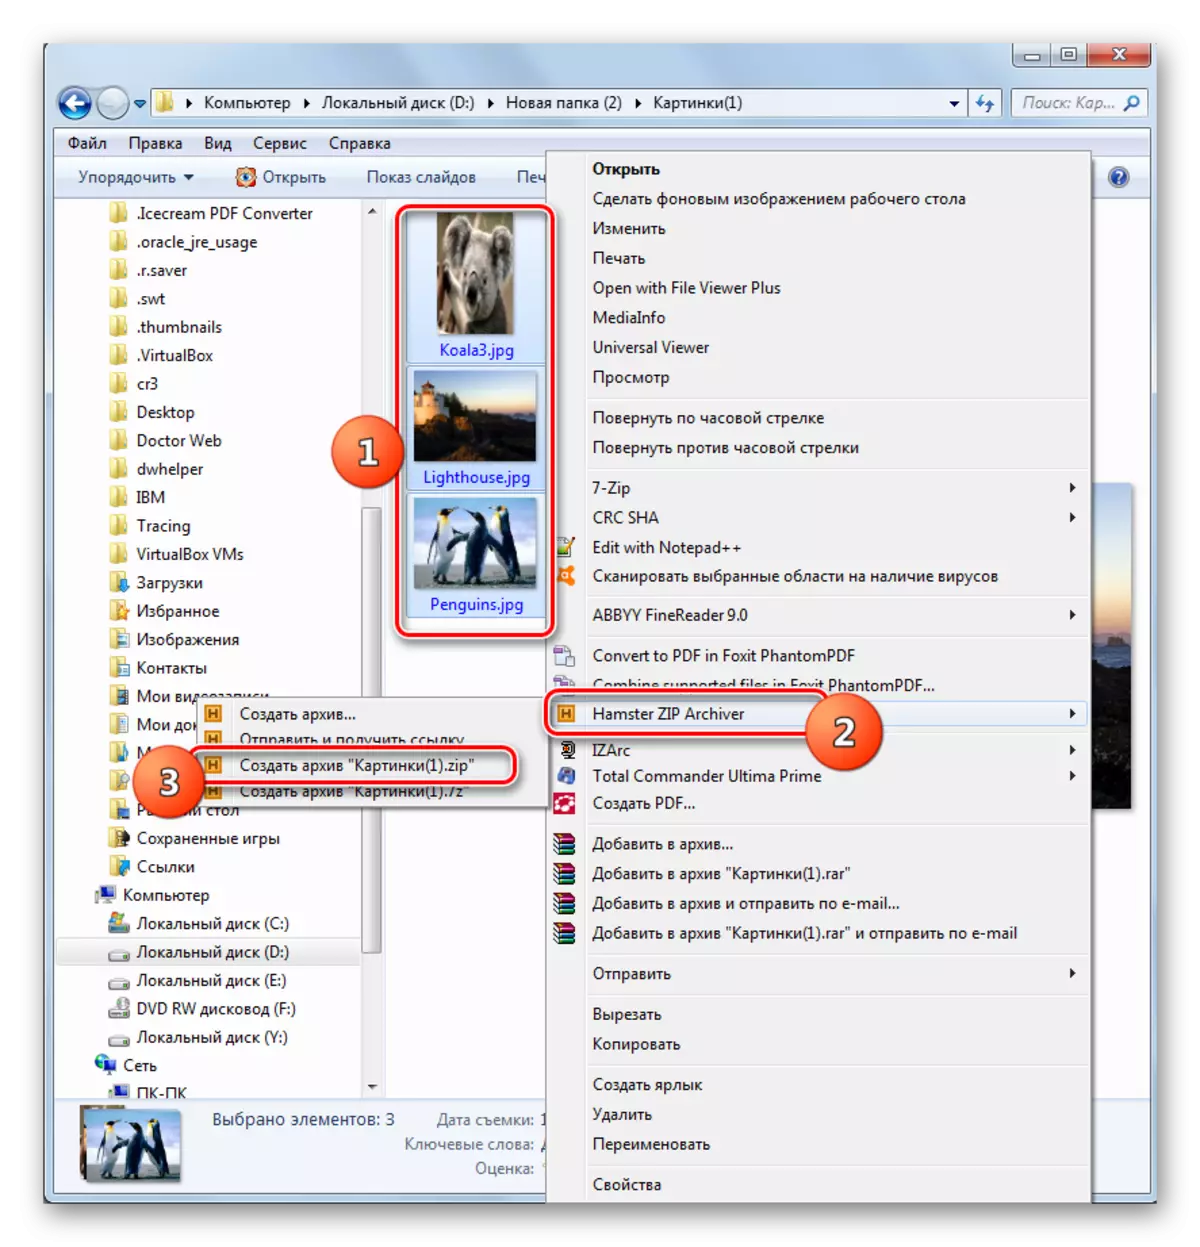 Phetoho ho bōptjoa ha diario Zip ke default ka menu ya moelelo oa Windows Explorer ka mmutlanyana Zip Archiver